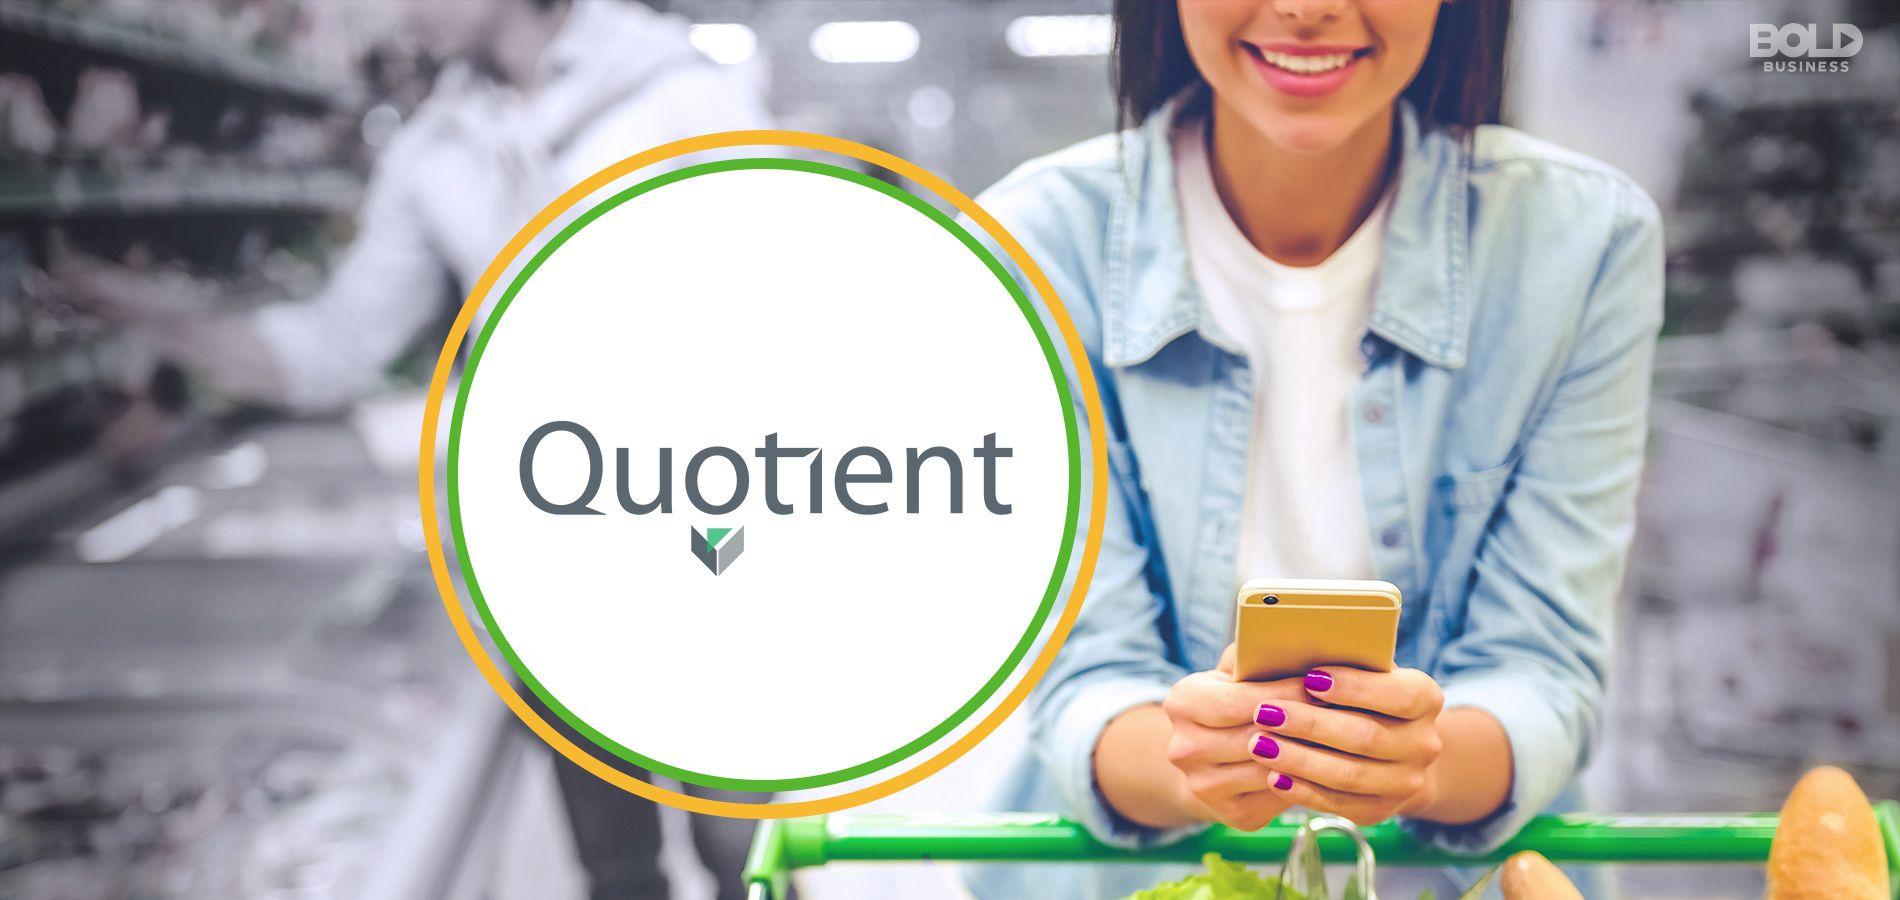 Quotient Logo - Quotient Technology Inc. Helps Americans Save Billions - Bold Business